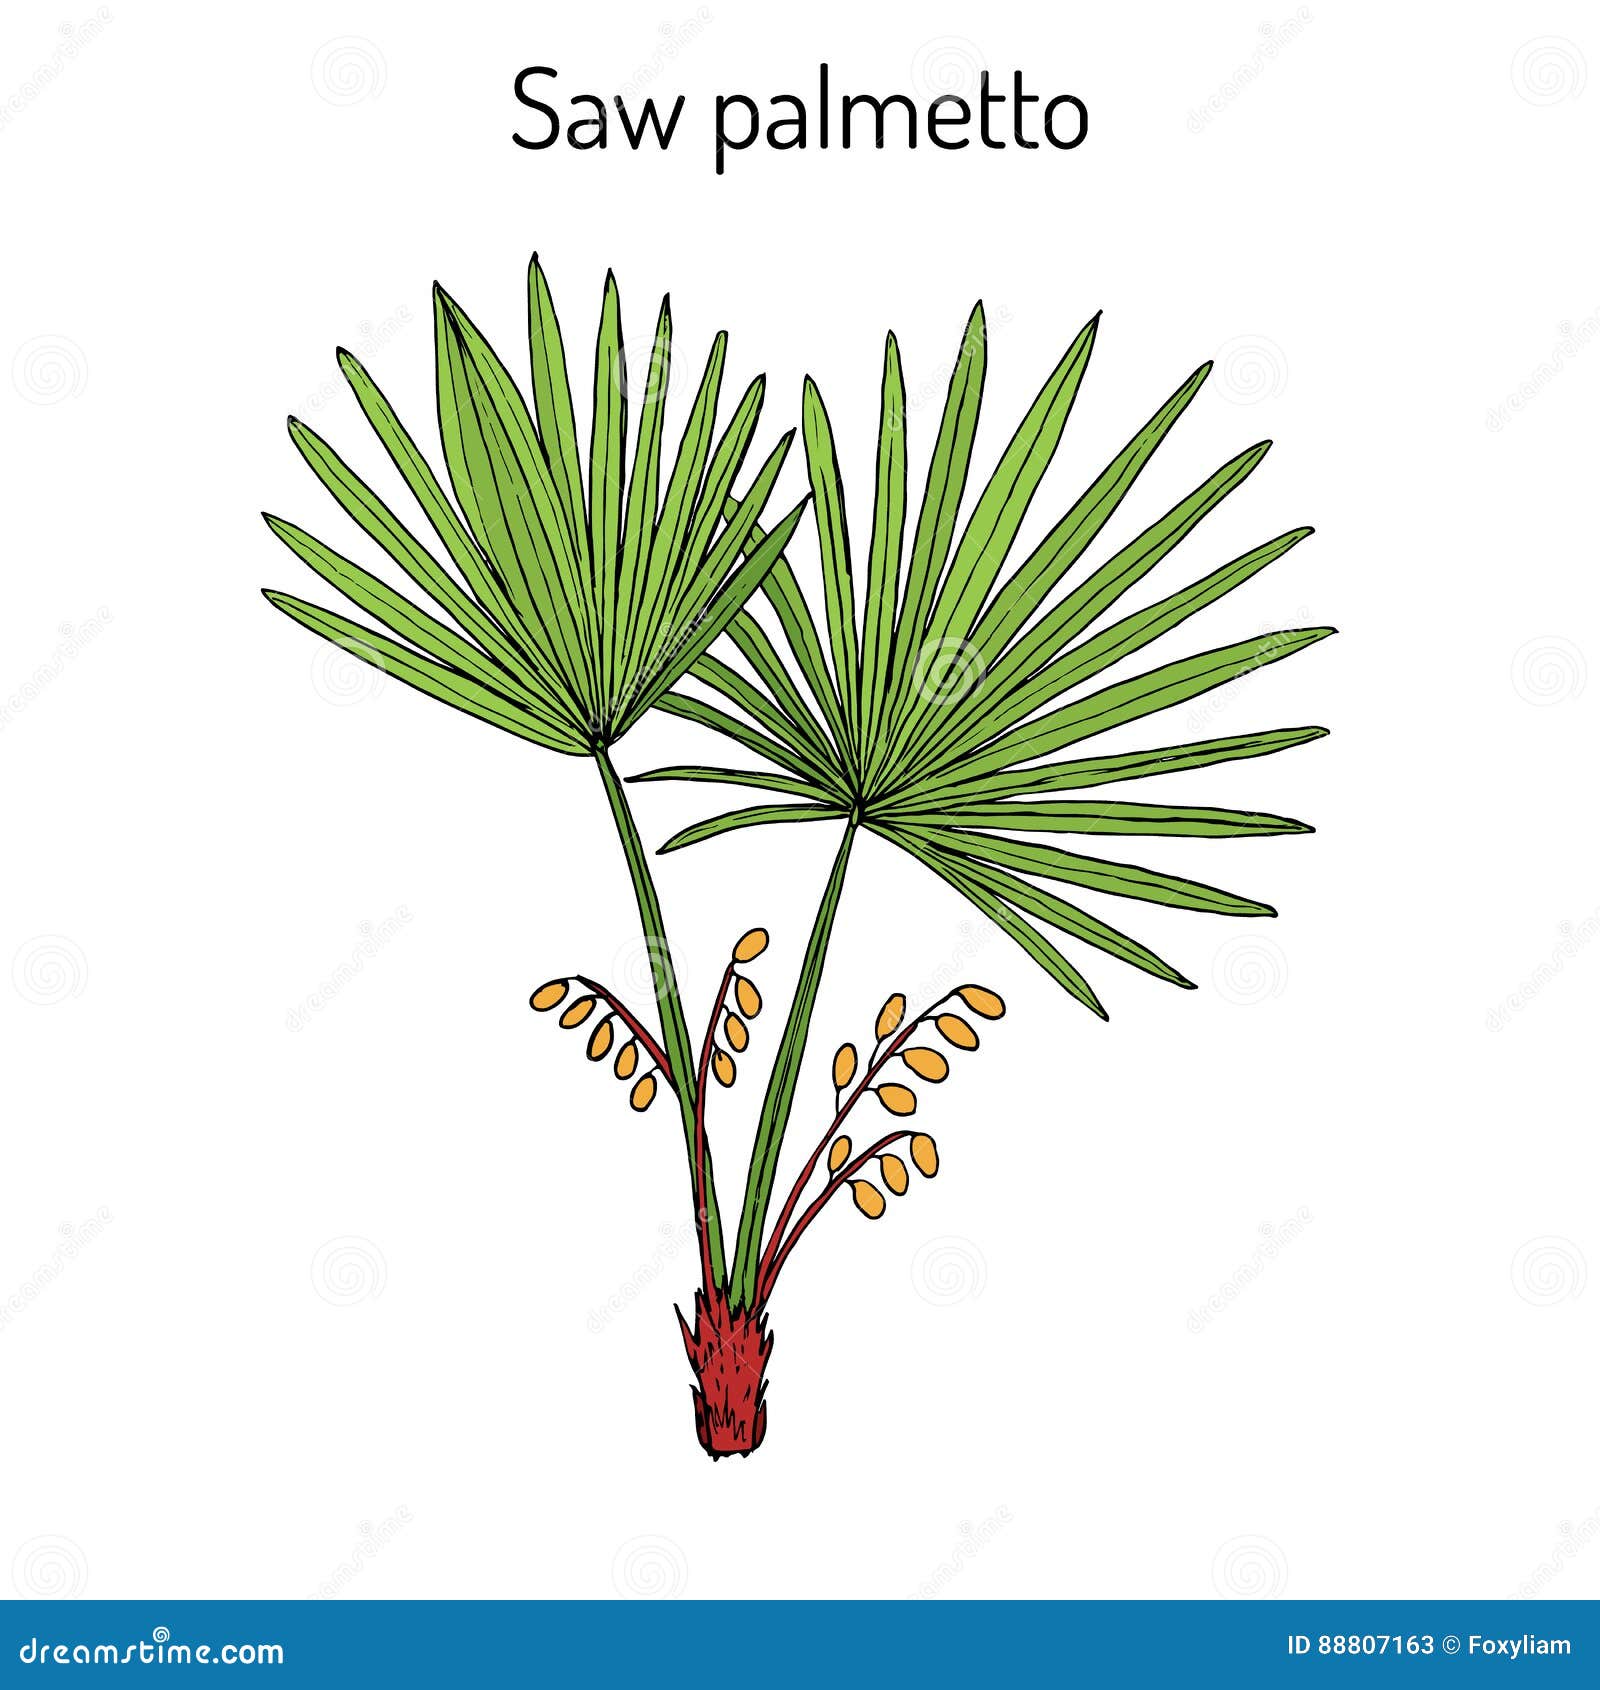 saw palmetto serenoa repens , medicinal tree